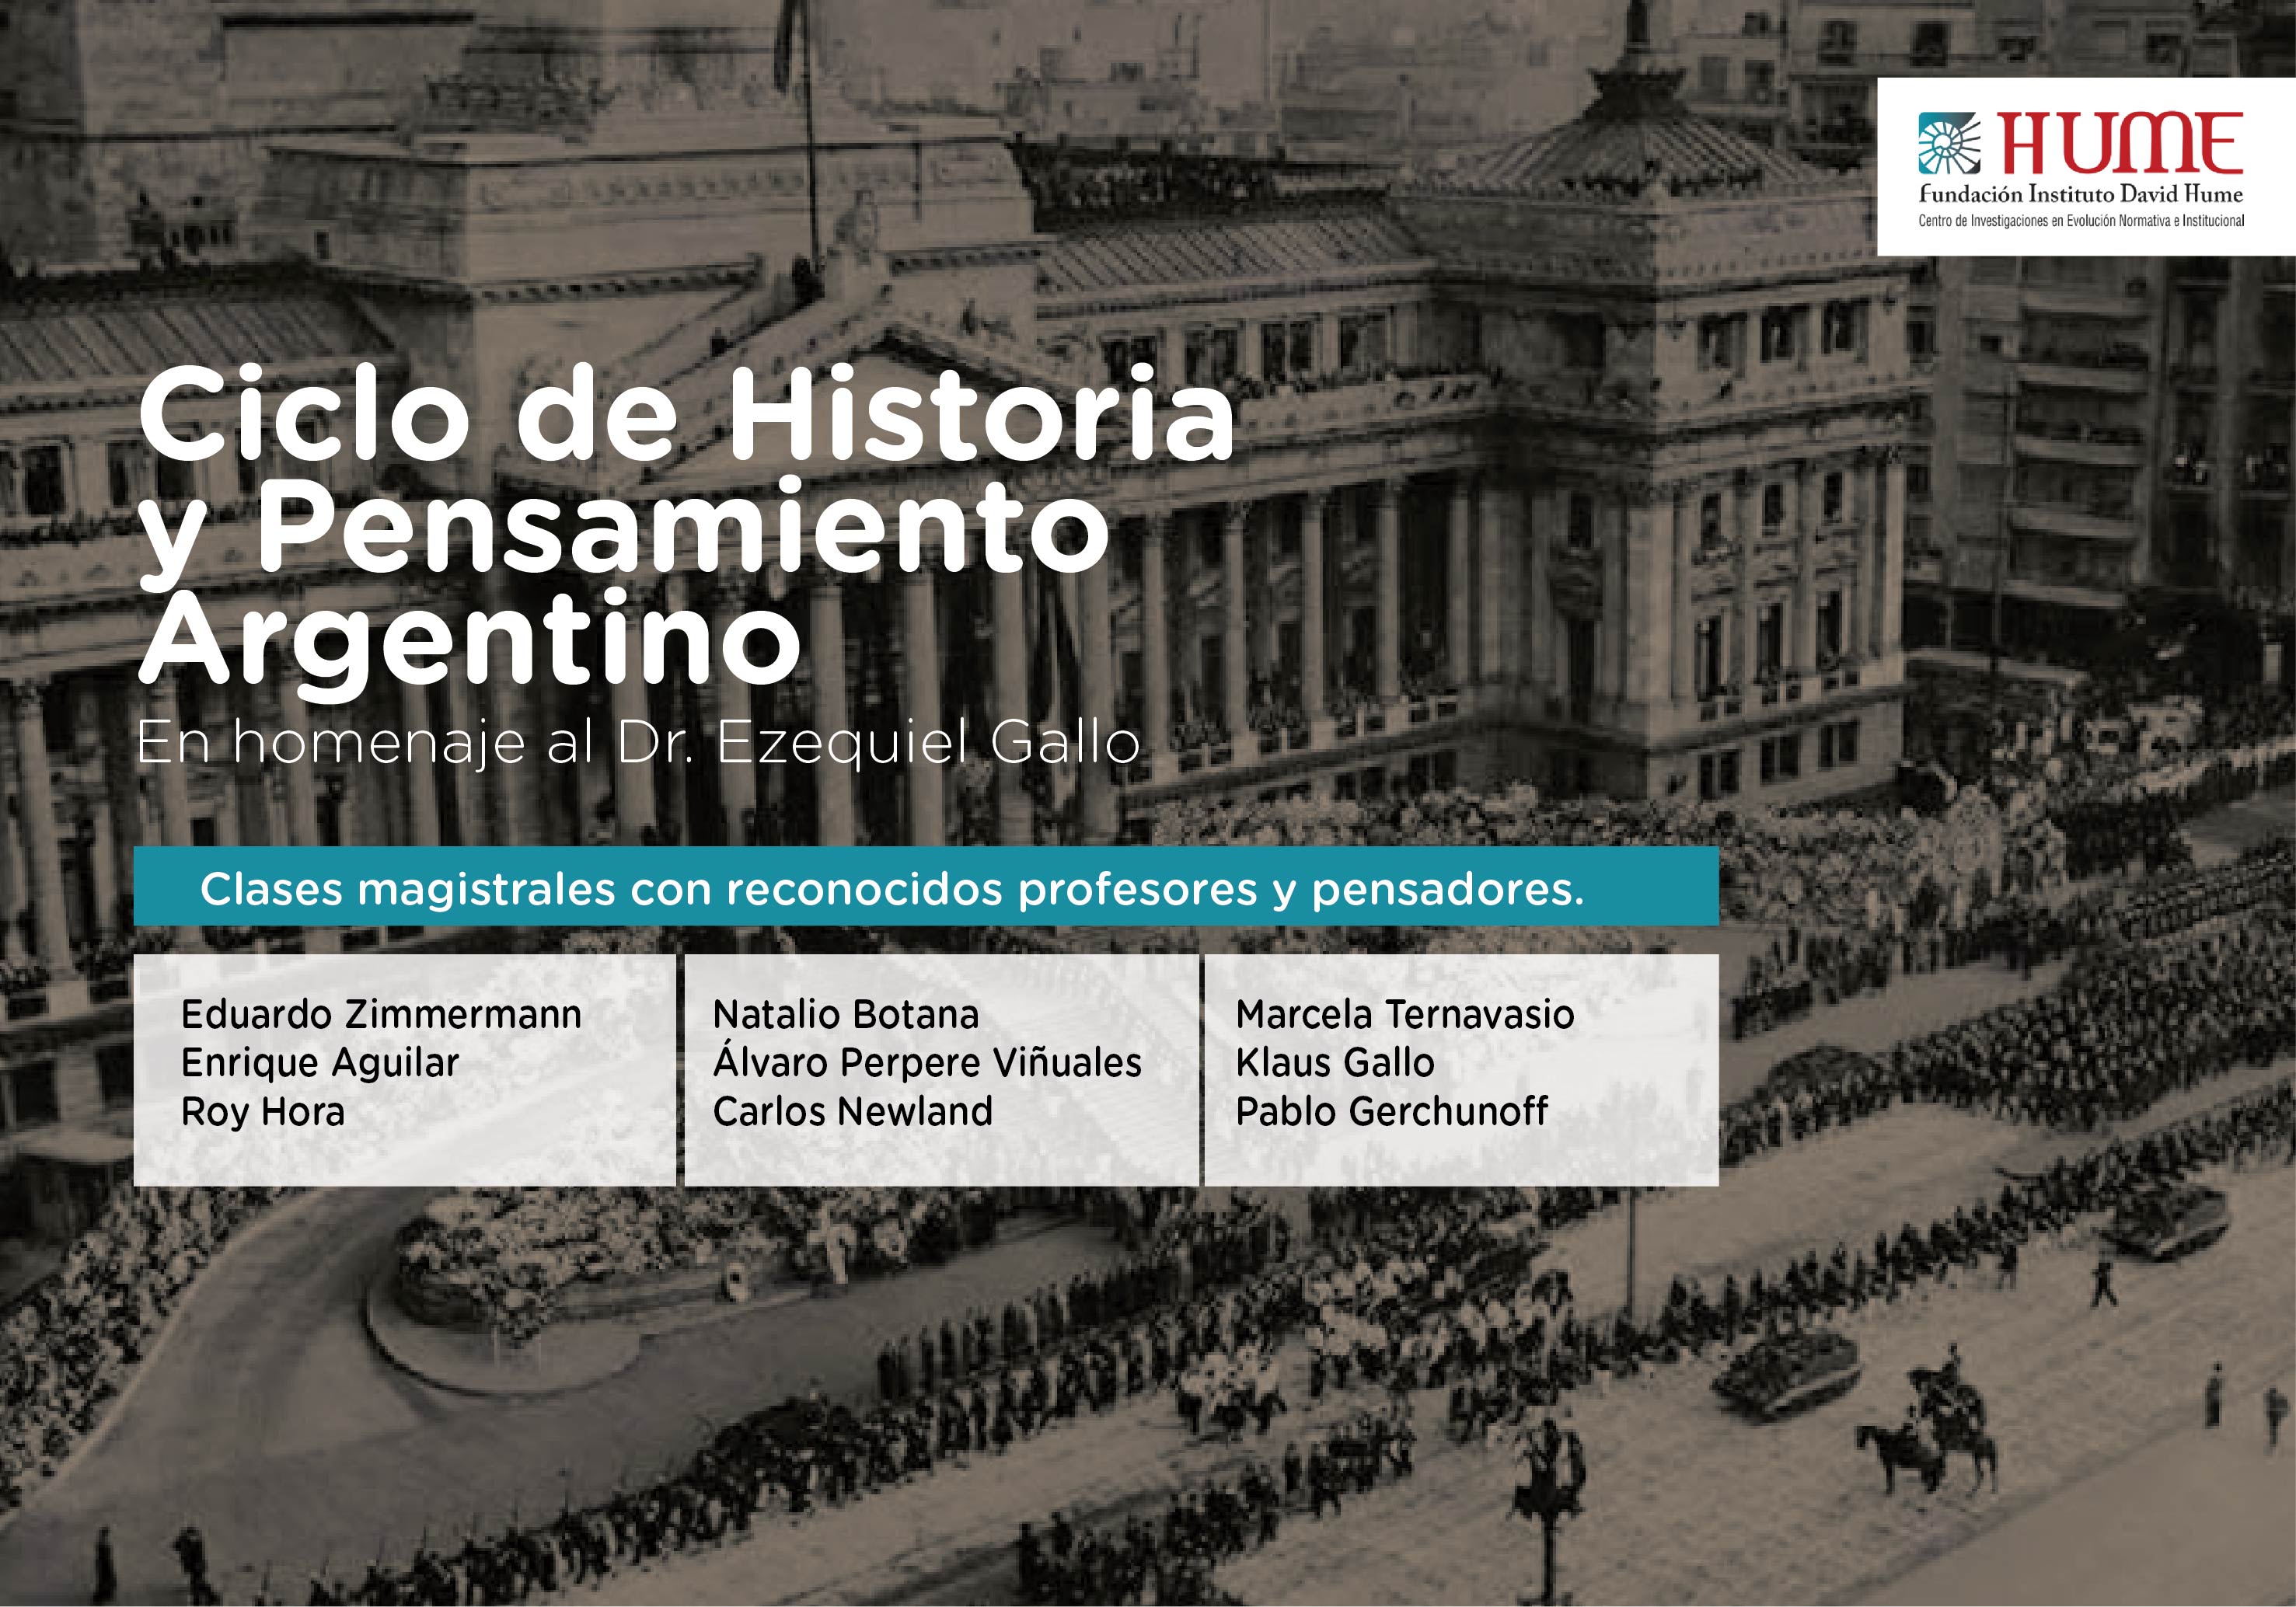 ¡Ya podés inscribirte! Ciclo de Historia y Pensamiento Argentino